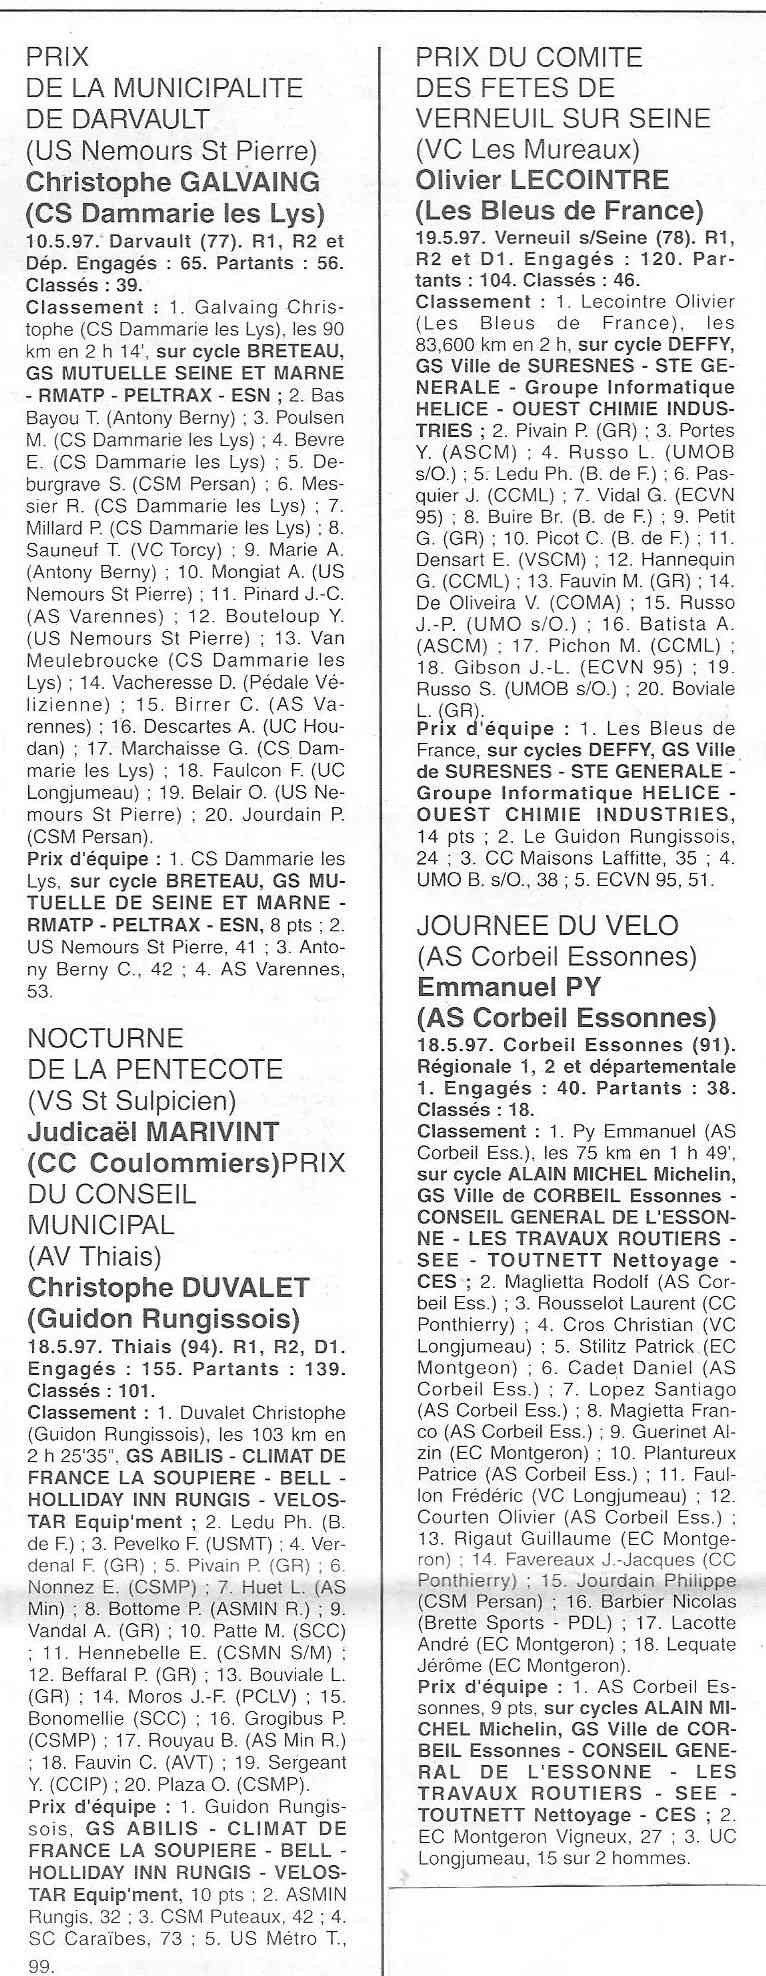  Coureurs et Clubs de Octobre 1996 à décembre 1999 - Page 6 0_00122